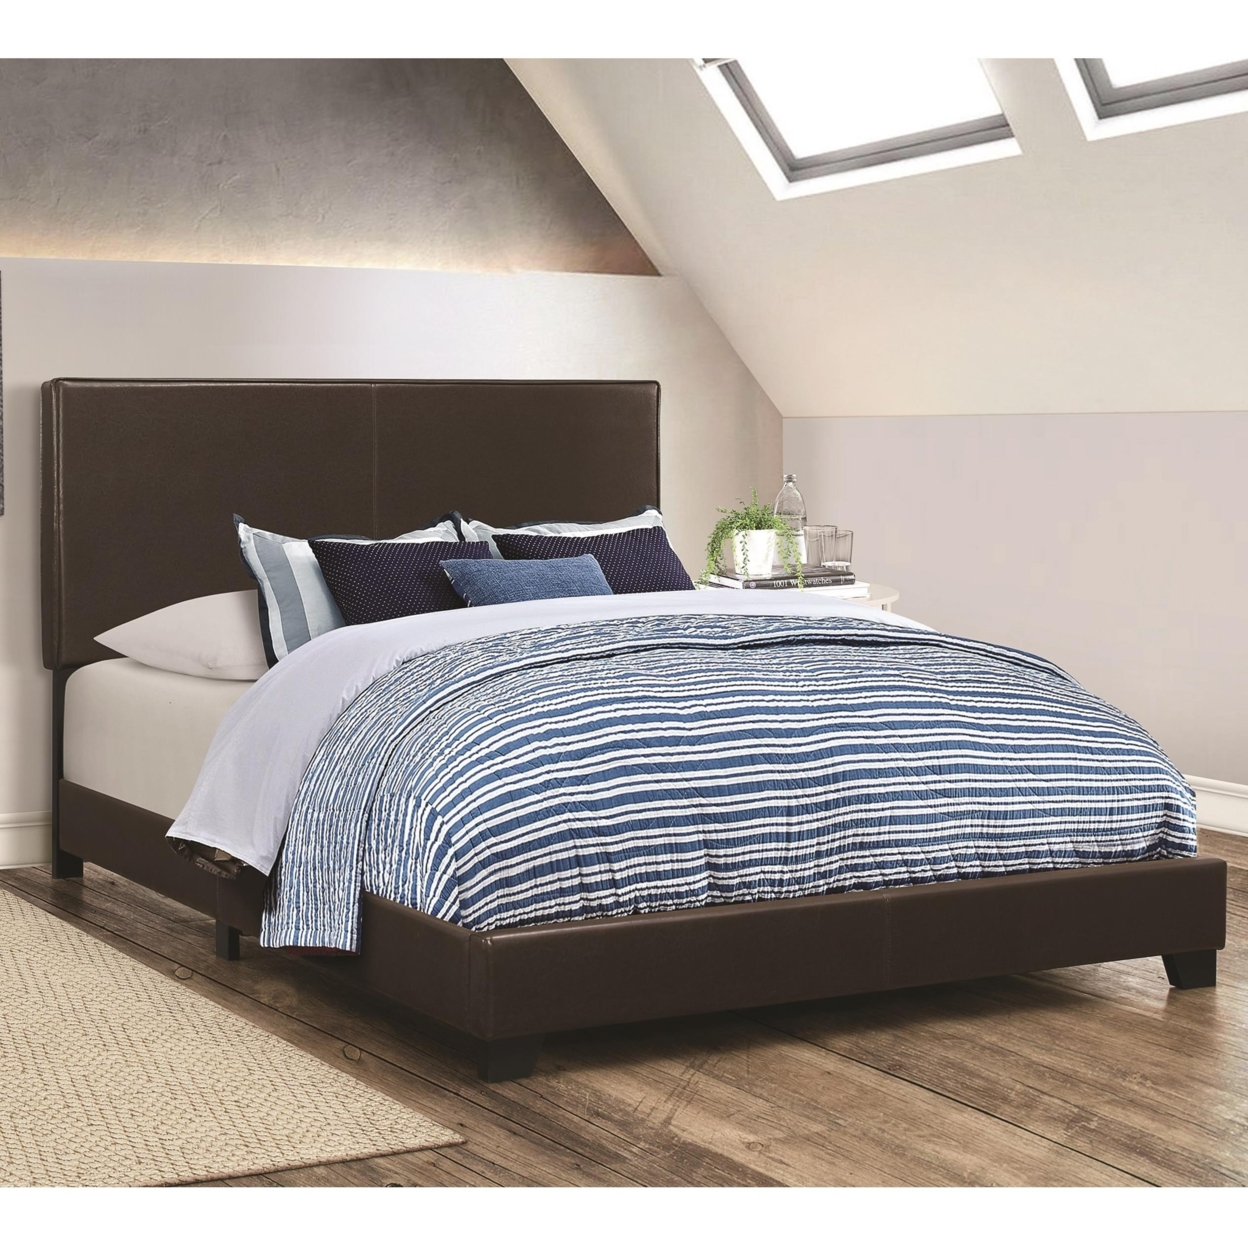 Leather Upholstered Full Size Platform Bed, Brown- Saltoro Sherpi